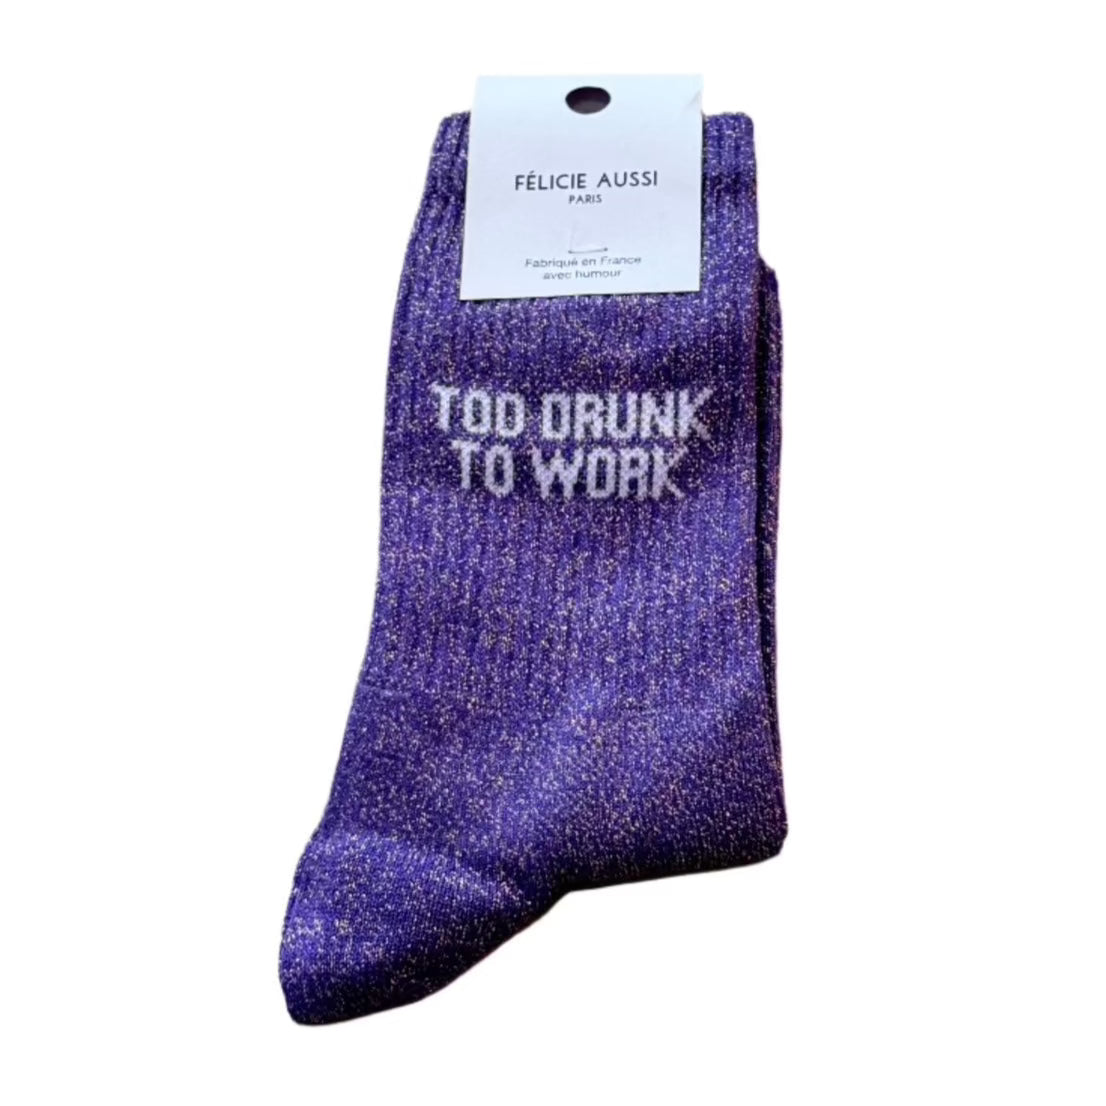 Too Drunk to Work | Glitter Socks